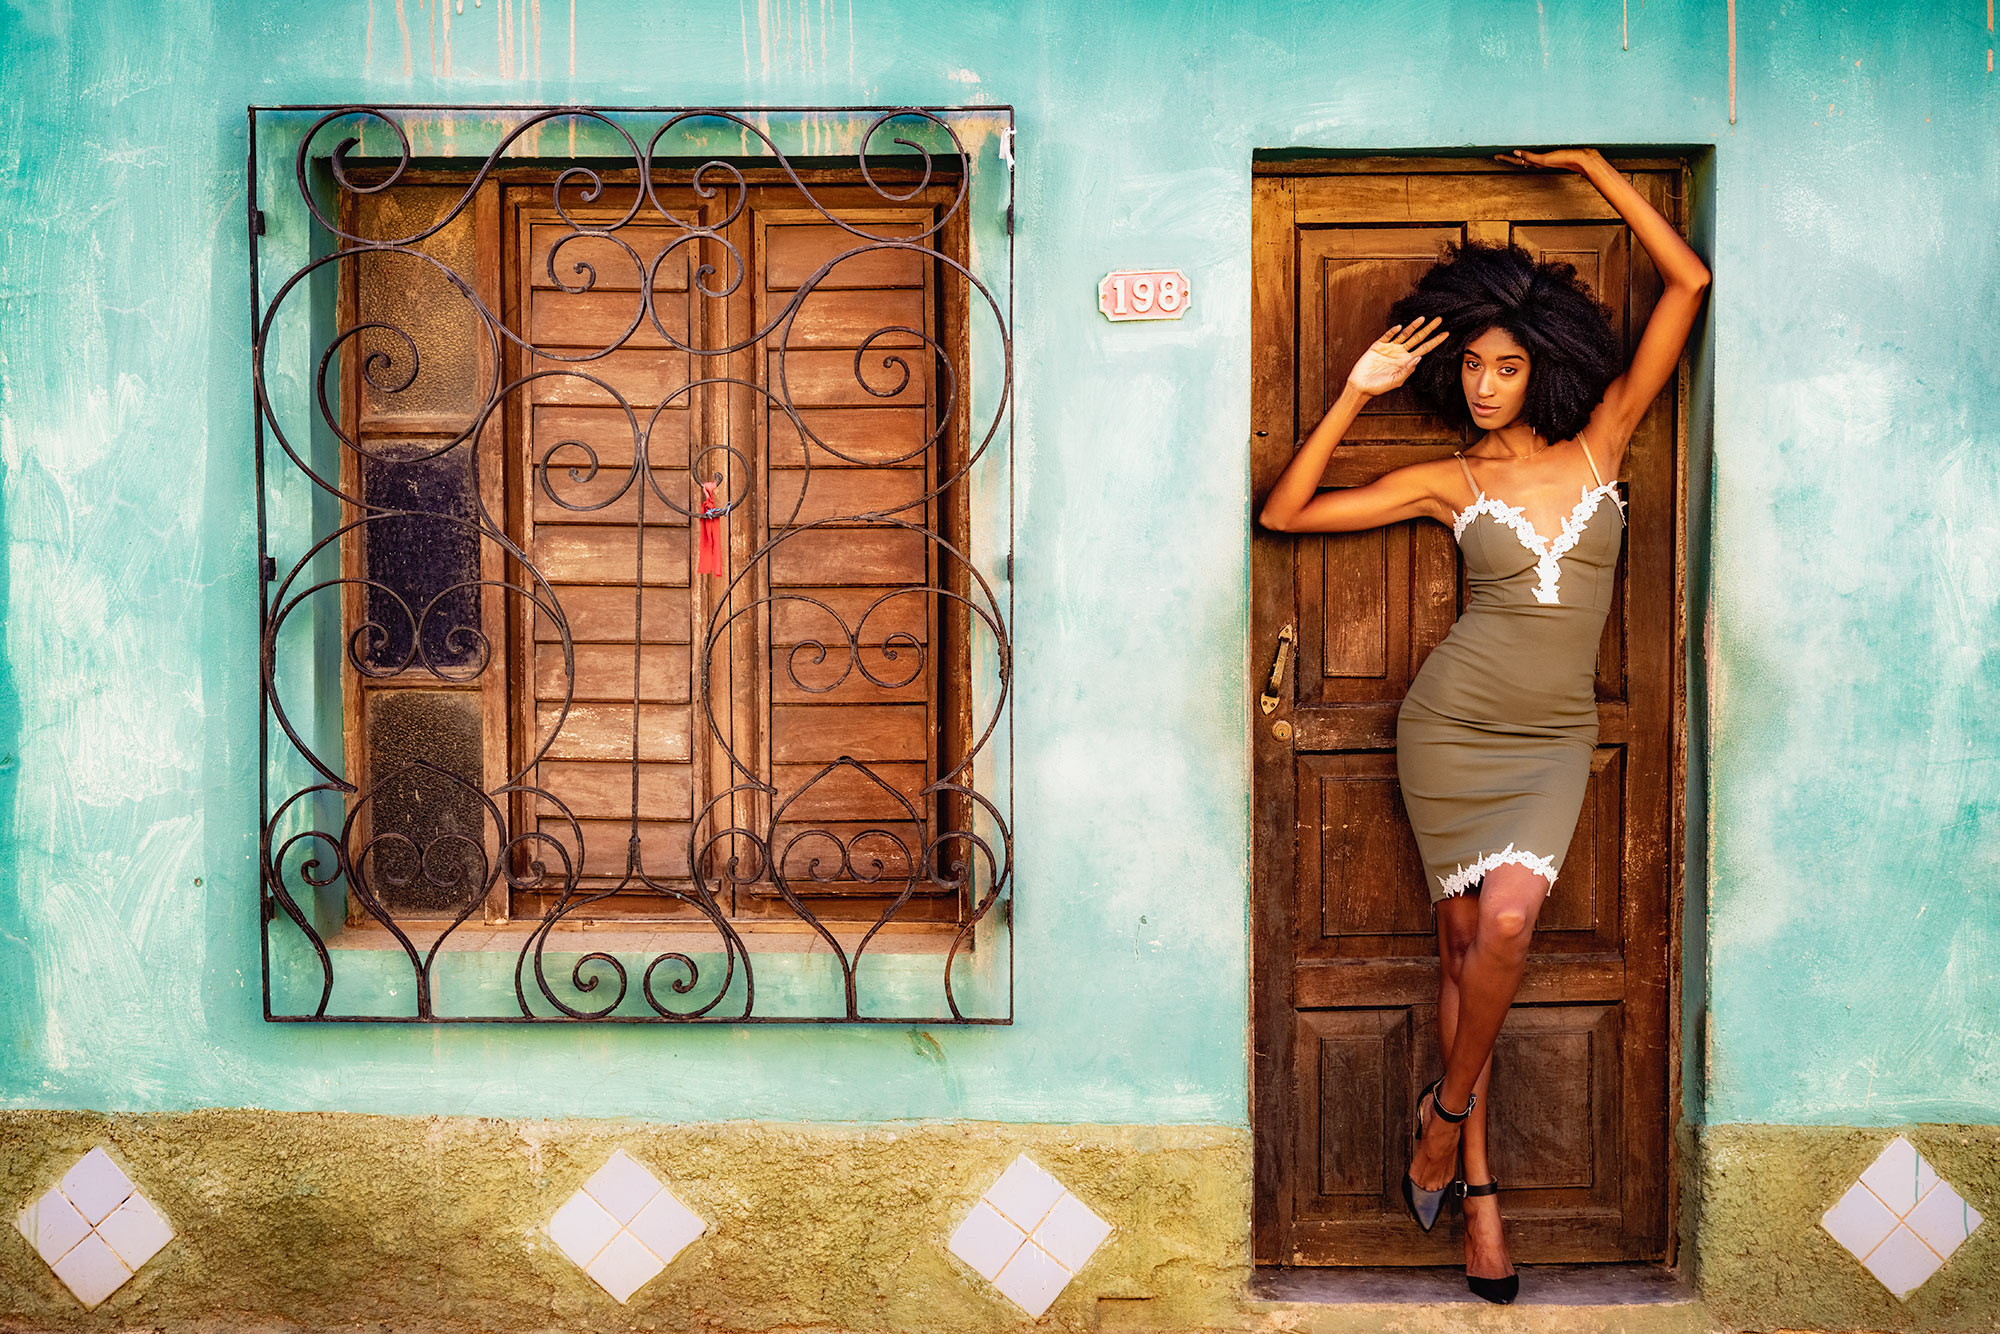 Kubafotoreise mit einer Tropicana Tänzerin fotografiert auf einer Fotoreise in Kuba.